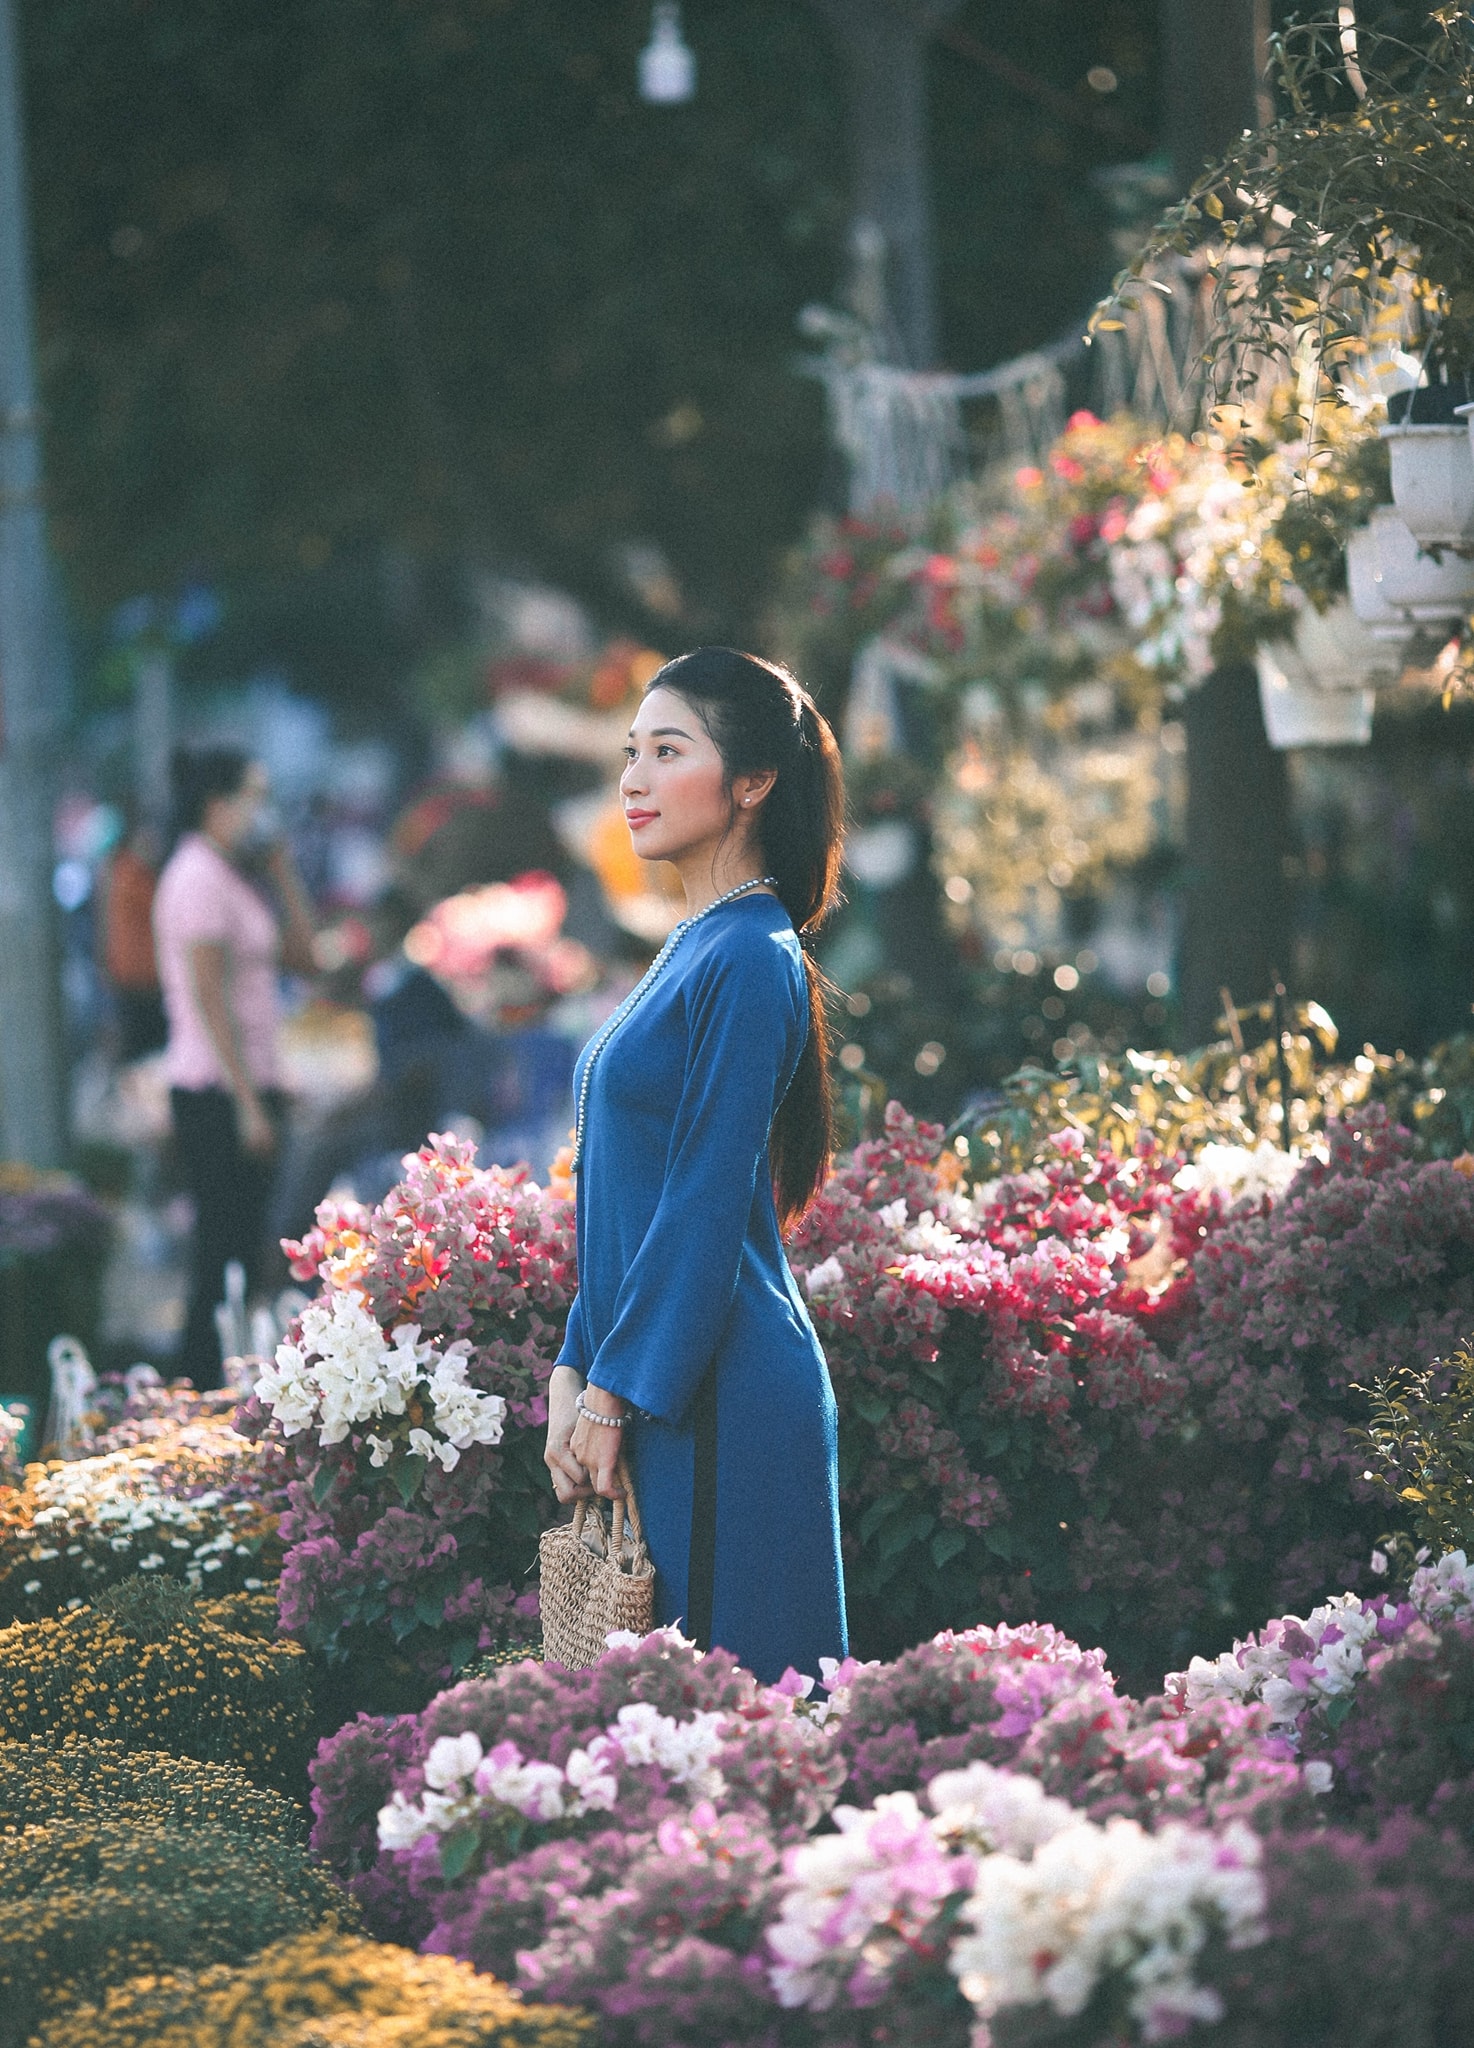 Đến với địa điểm chụp hình áo dài Tết, bạn sẽ được trải nghiệm các bức hình cực kỳ ấn tượng, đầy màu sắc và hấp dẫn. Qua đó, bạn có thể lưu giữ những khoảnh khắc đáng nhớ, khám phá nét đẹp văn hóa truyền thống trong sinh hoạt, tình cảm của người Việt Nam.